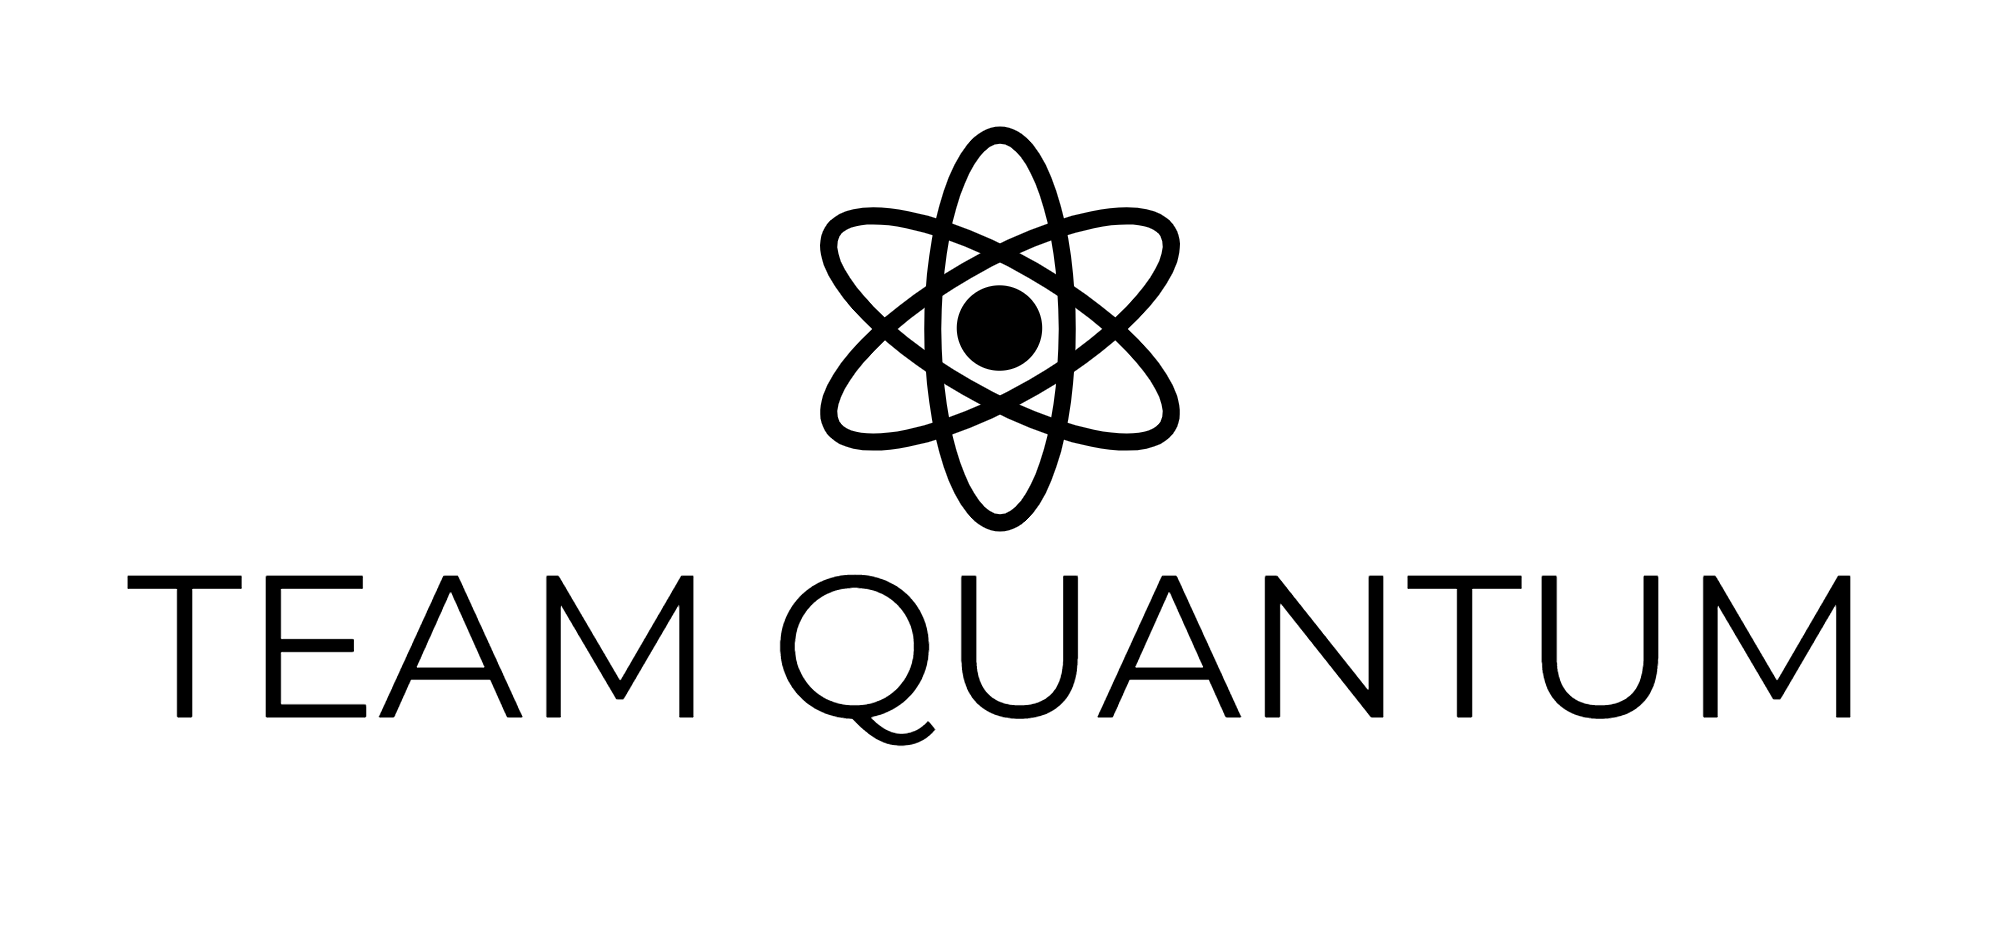 TEAM QUANTUM-logo-black.png